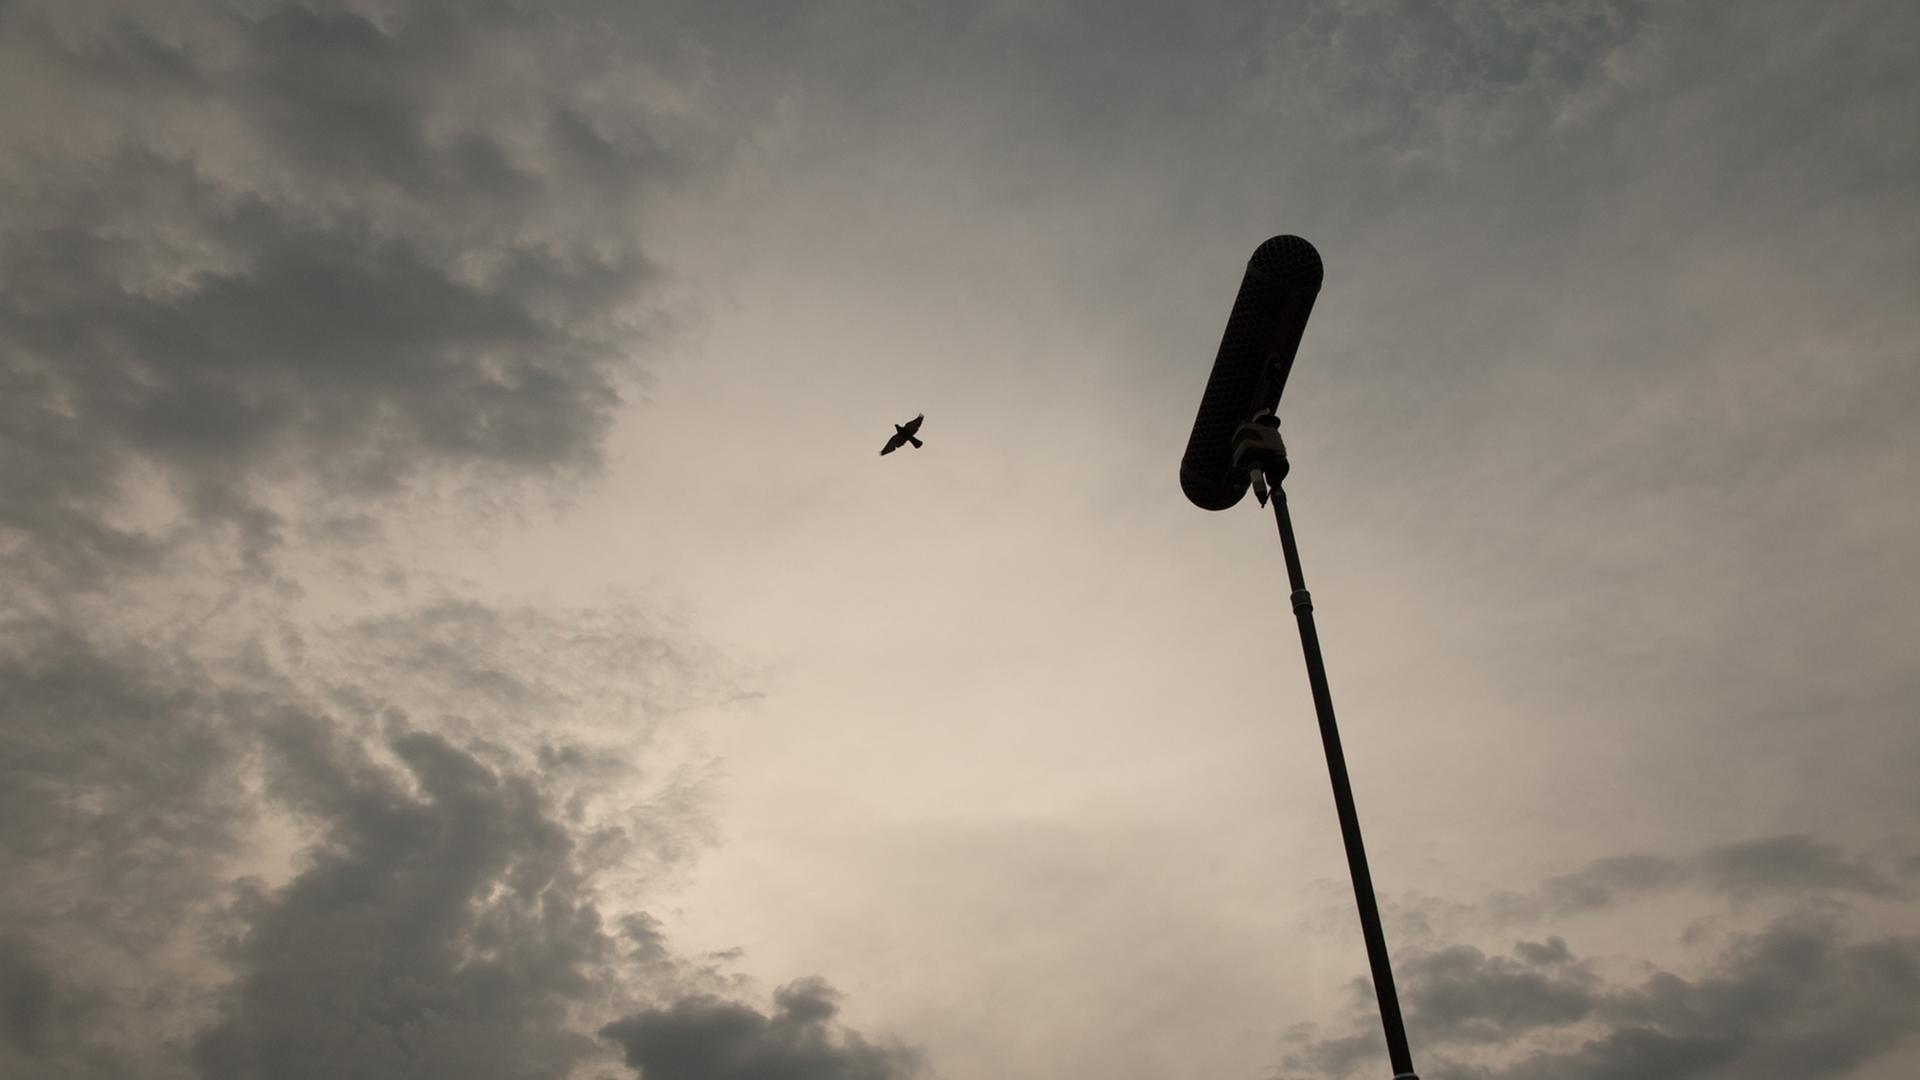 Ein Mikrofon an einer Stange in Richtung eines fliegenden Vogels gehalten. Der Himmel ist mit grauen Wolken verhangen.